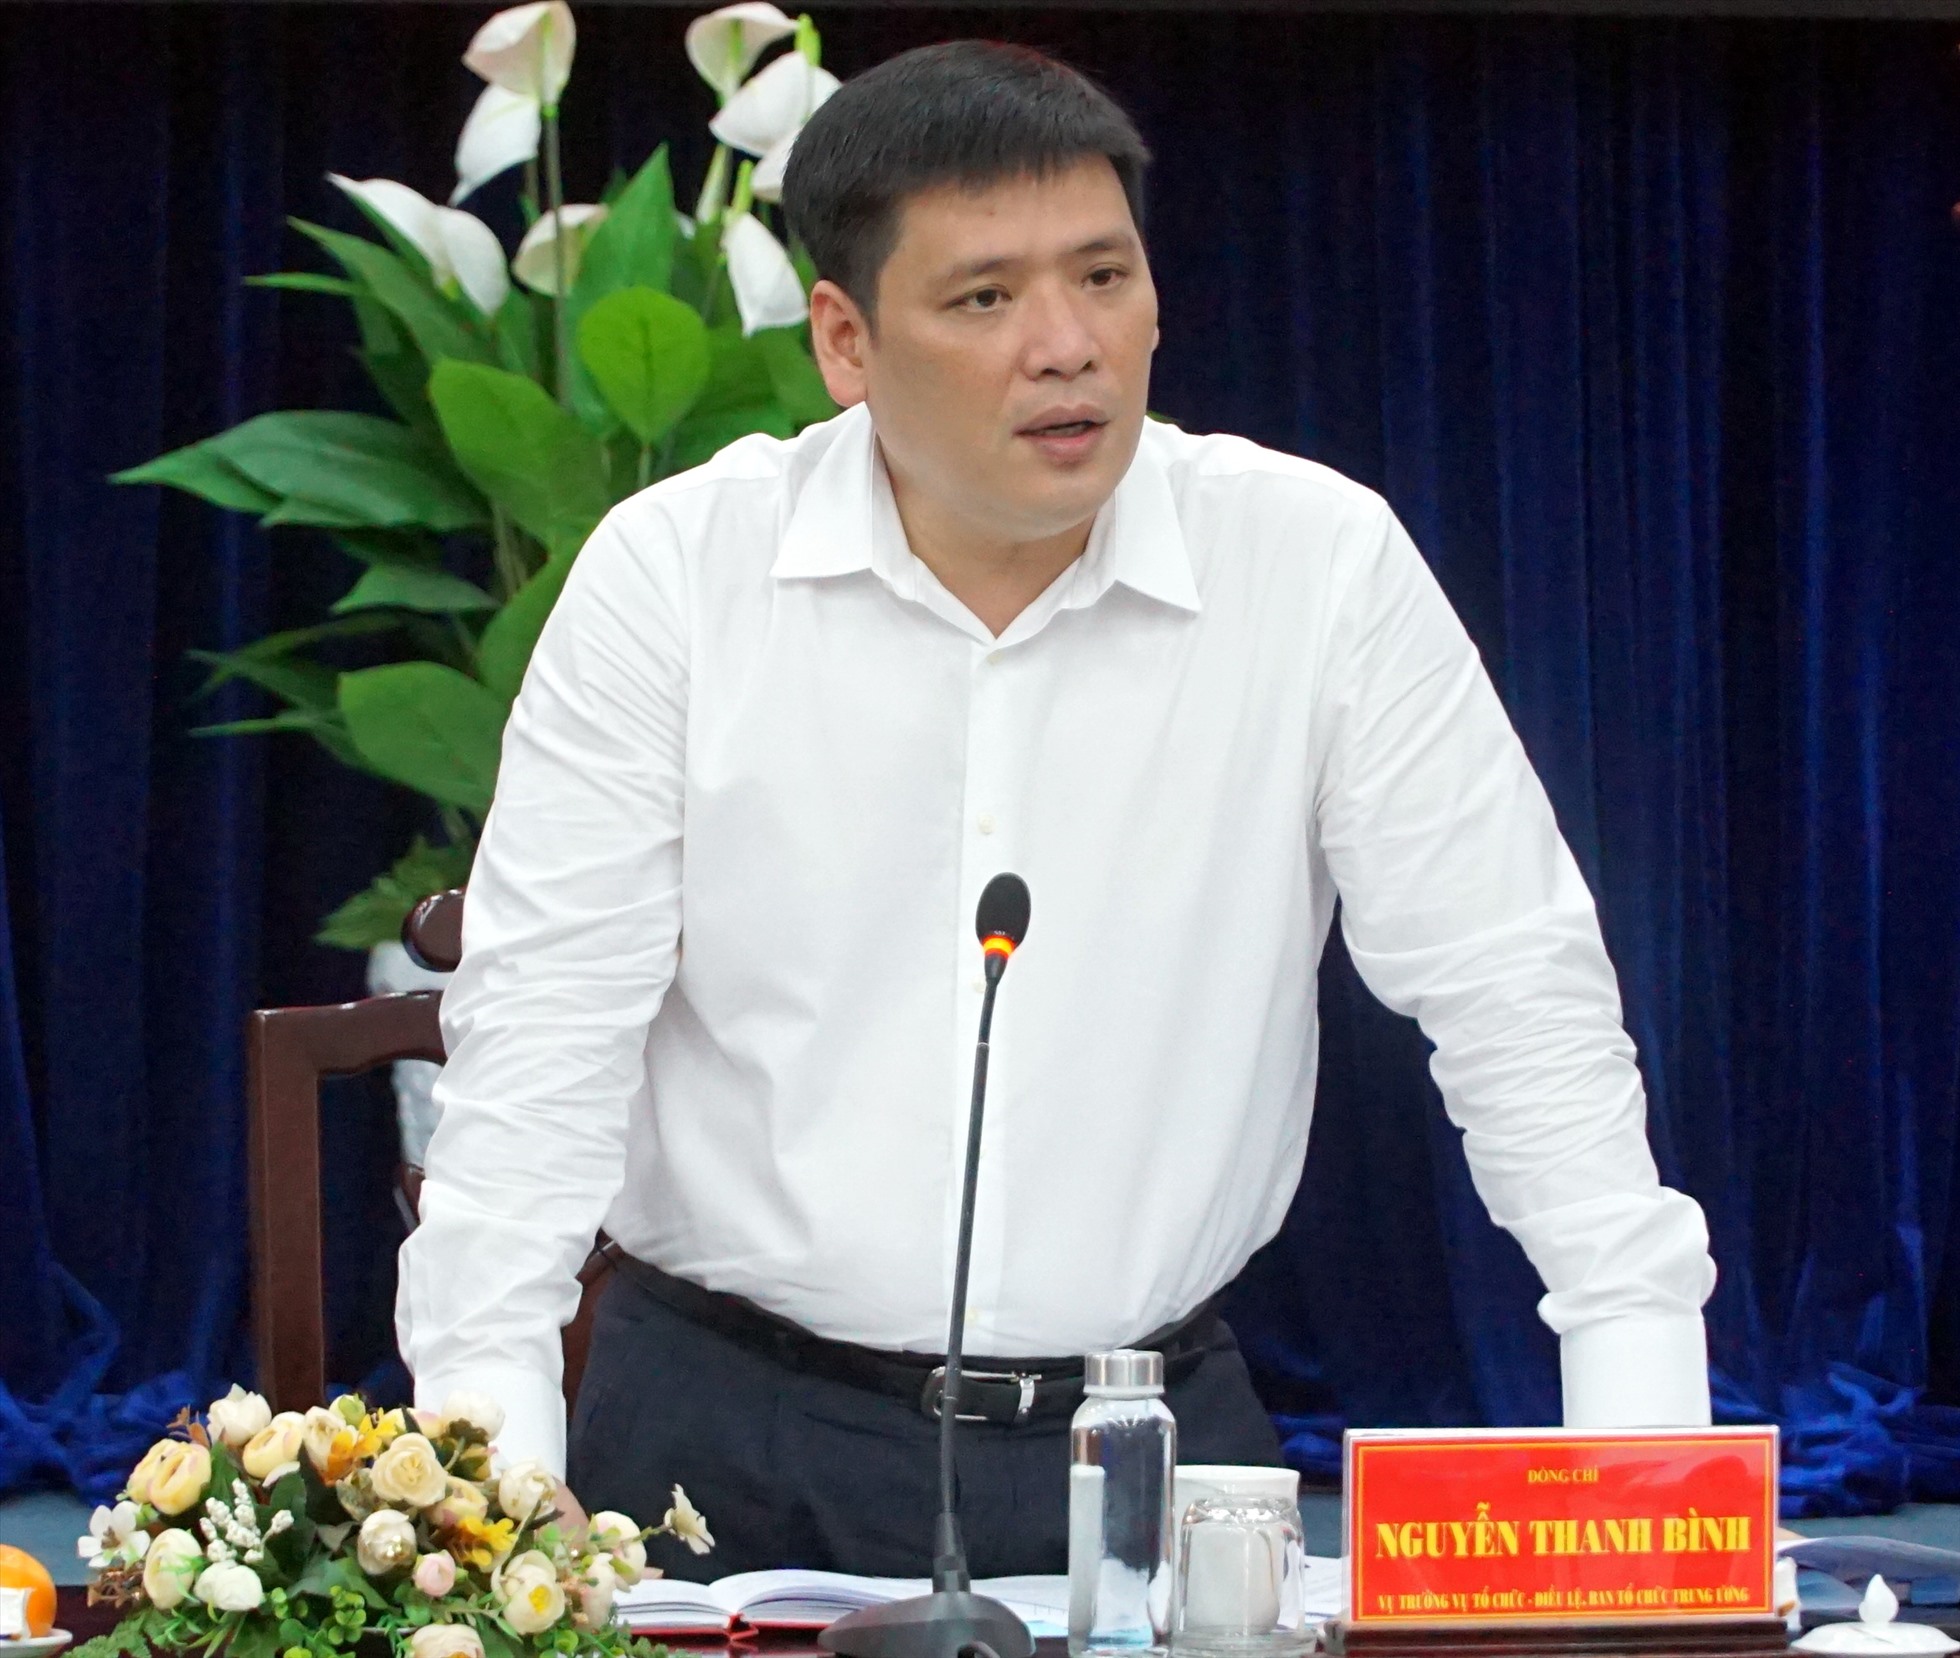 Đồng chí Nguyễn Thanh Bình, Vụ trưởng Vụ Tổ chức -Điều lệ, Ban Tổ chức Trung ương phát biểu tại buổi khảo sát. Ảnh: Nhật Hồ